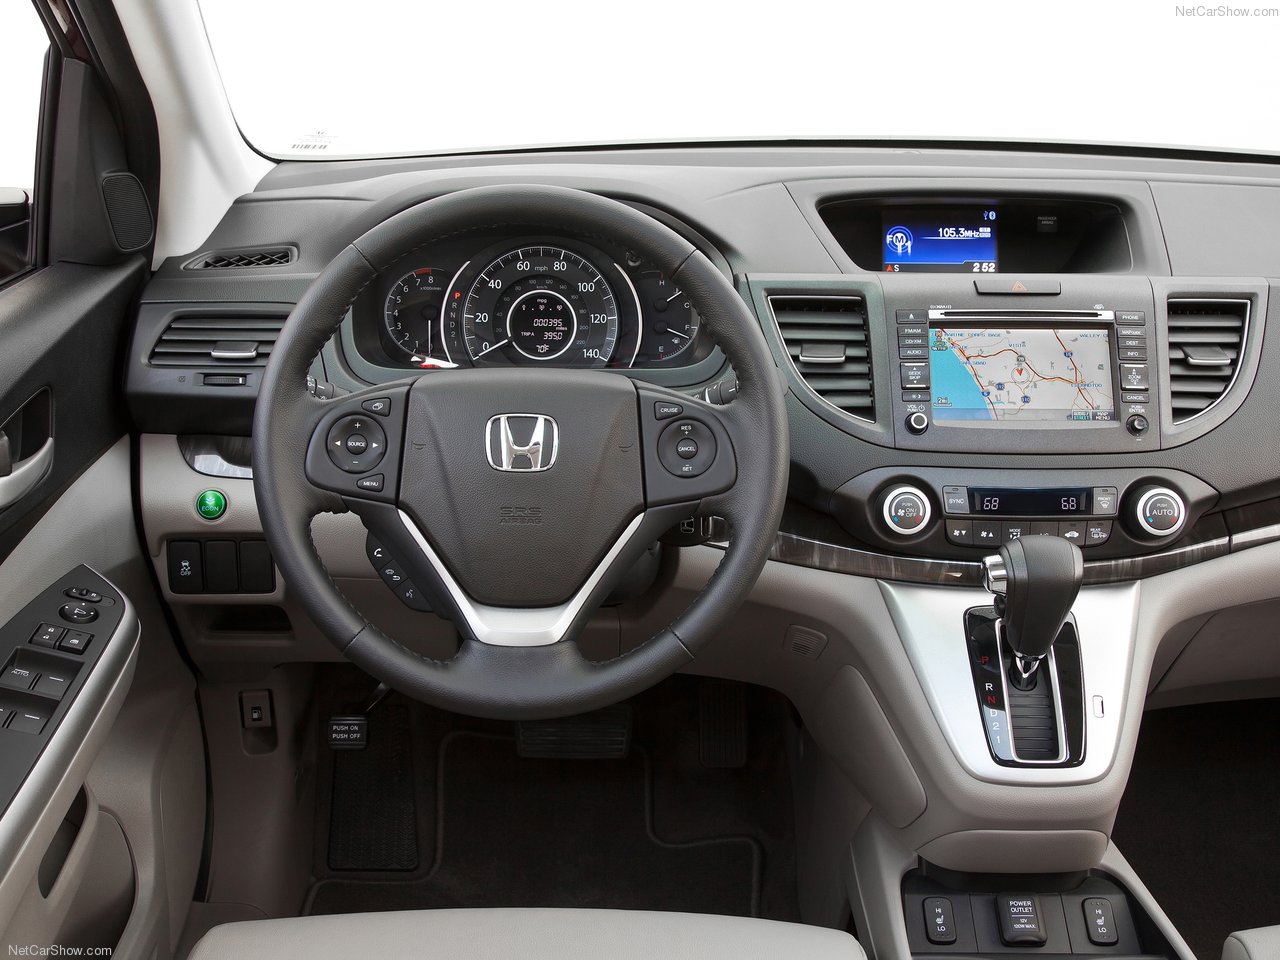 Honda CRV sản xuất năm 2010 giá 780 triệu đồng có hợp lý  Blog Xe Hơi  Carmudi